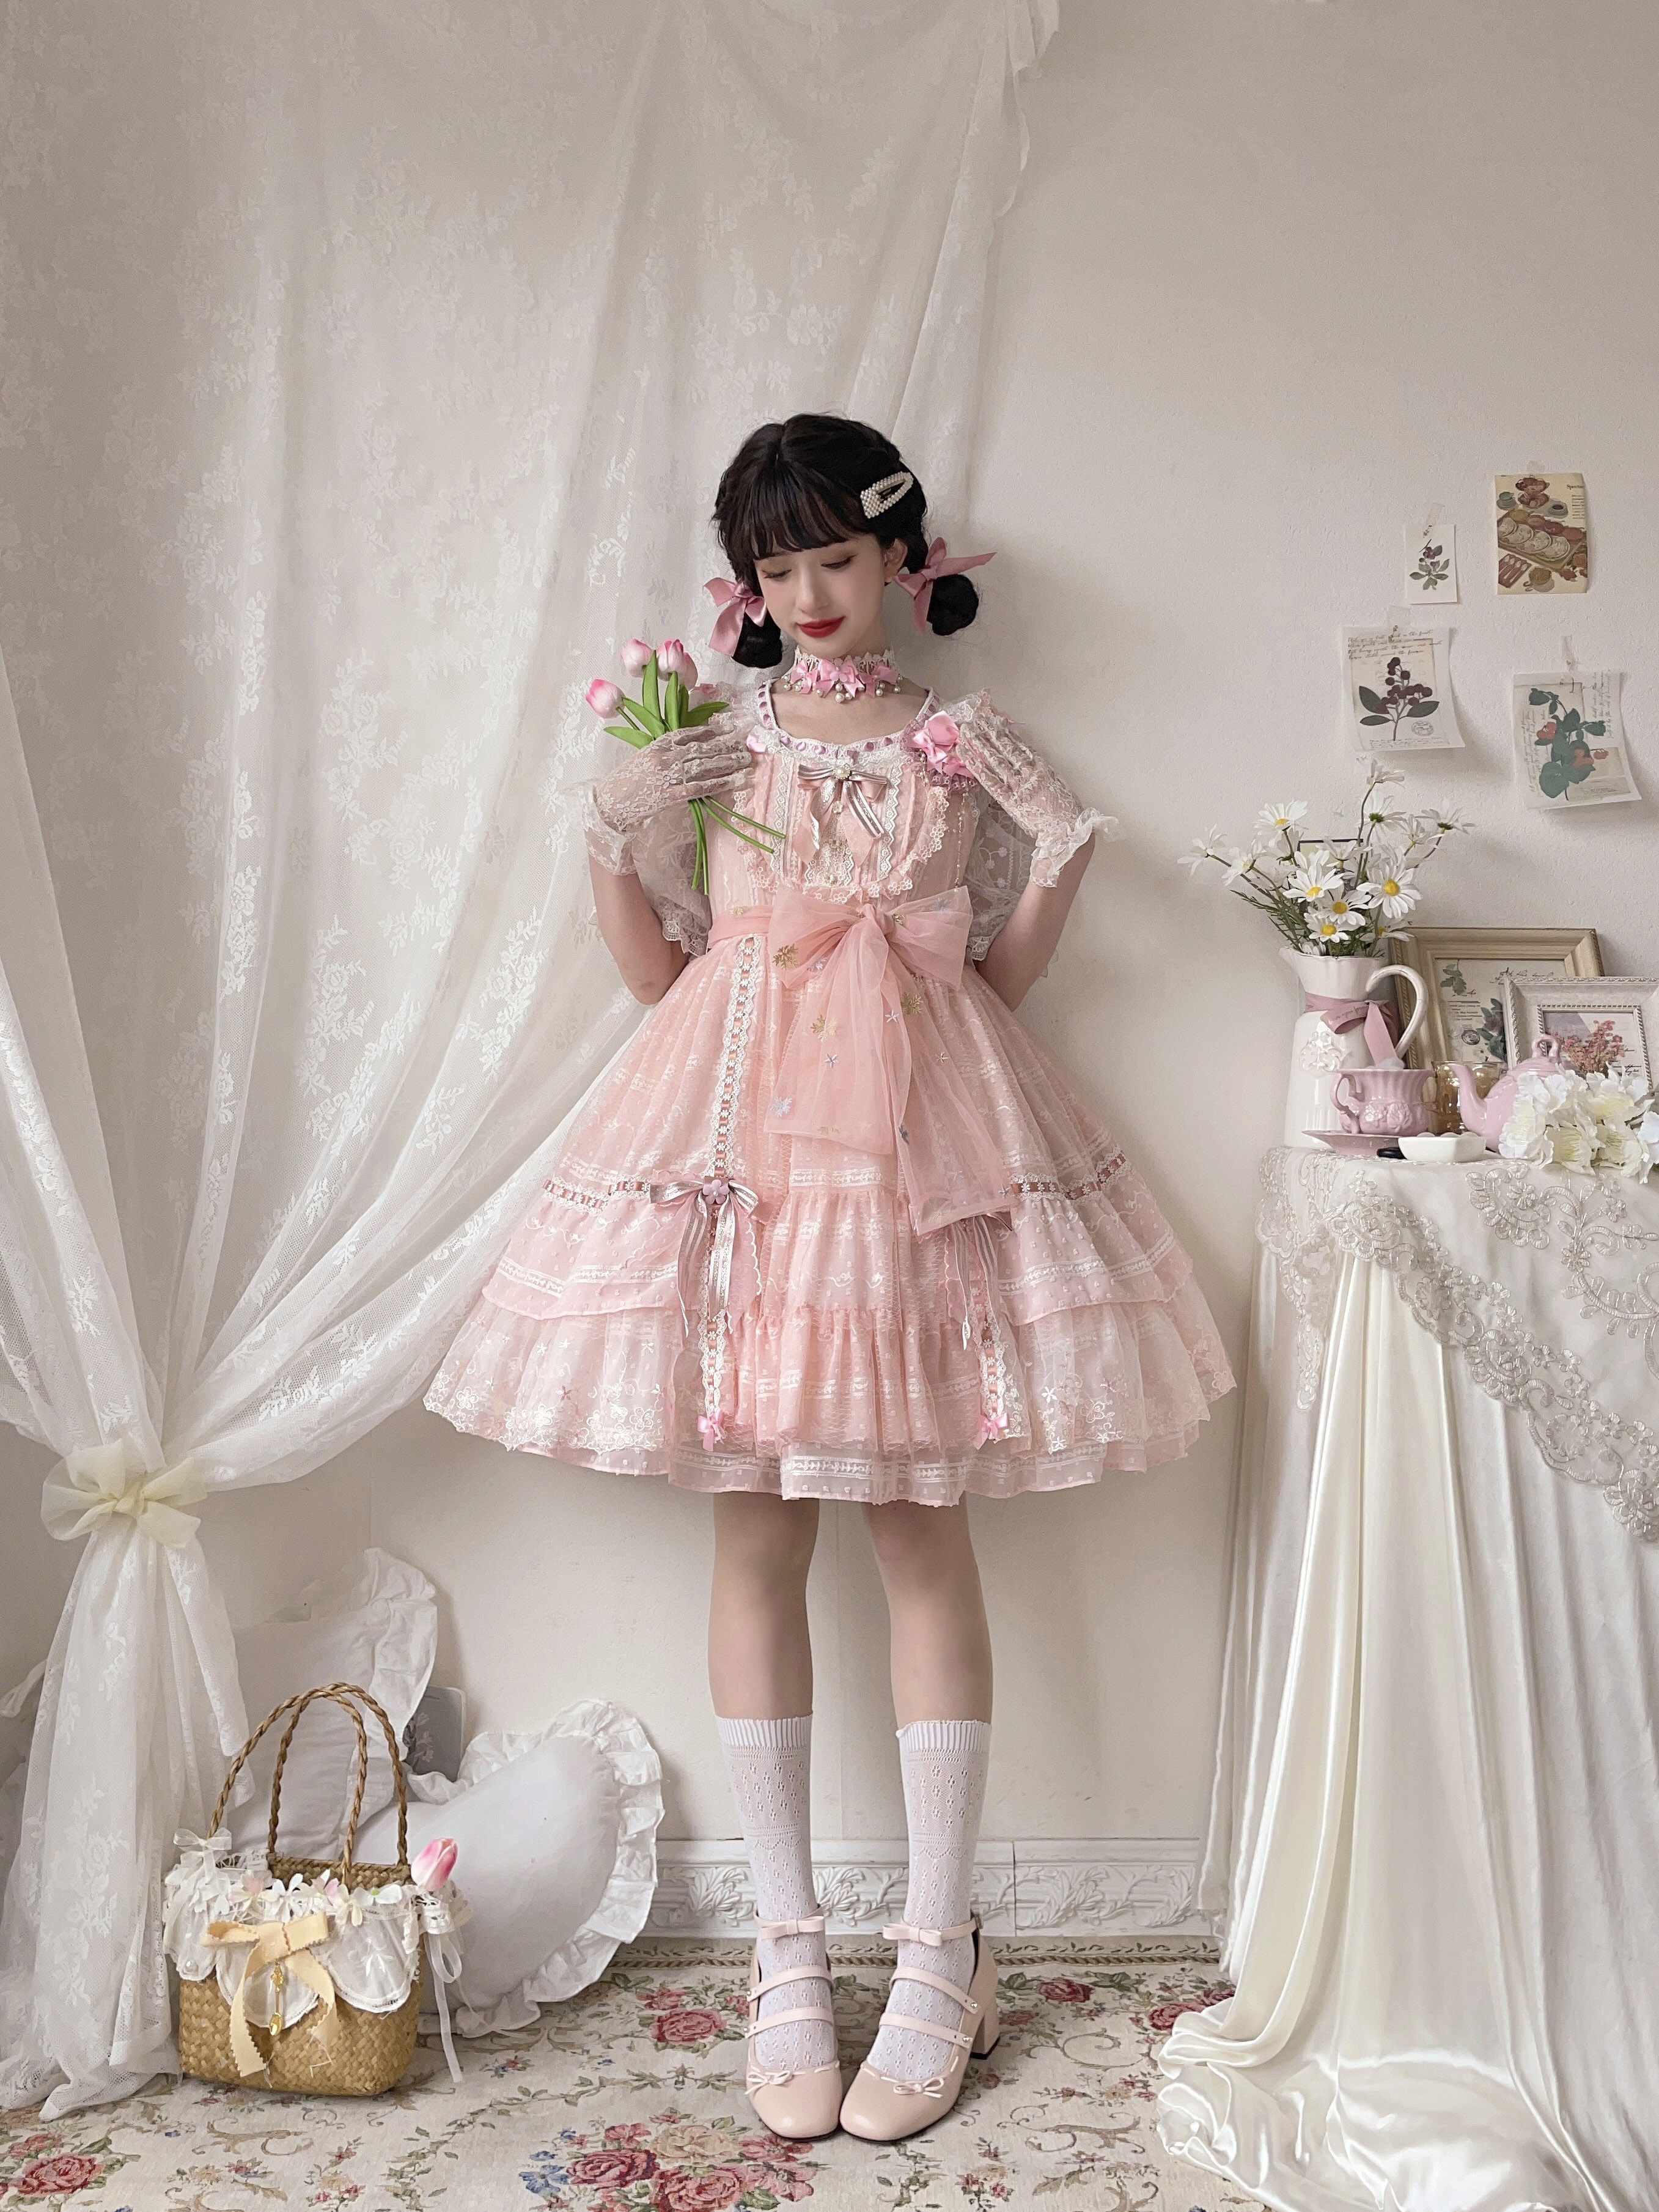 【现货】 慵懒时光纯色jsk  蕾丝公主蛋糕裙 梦境之匙原创lolita